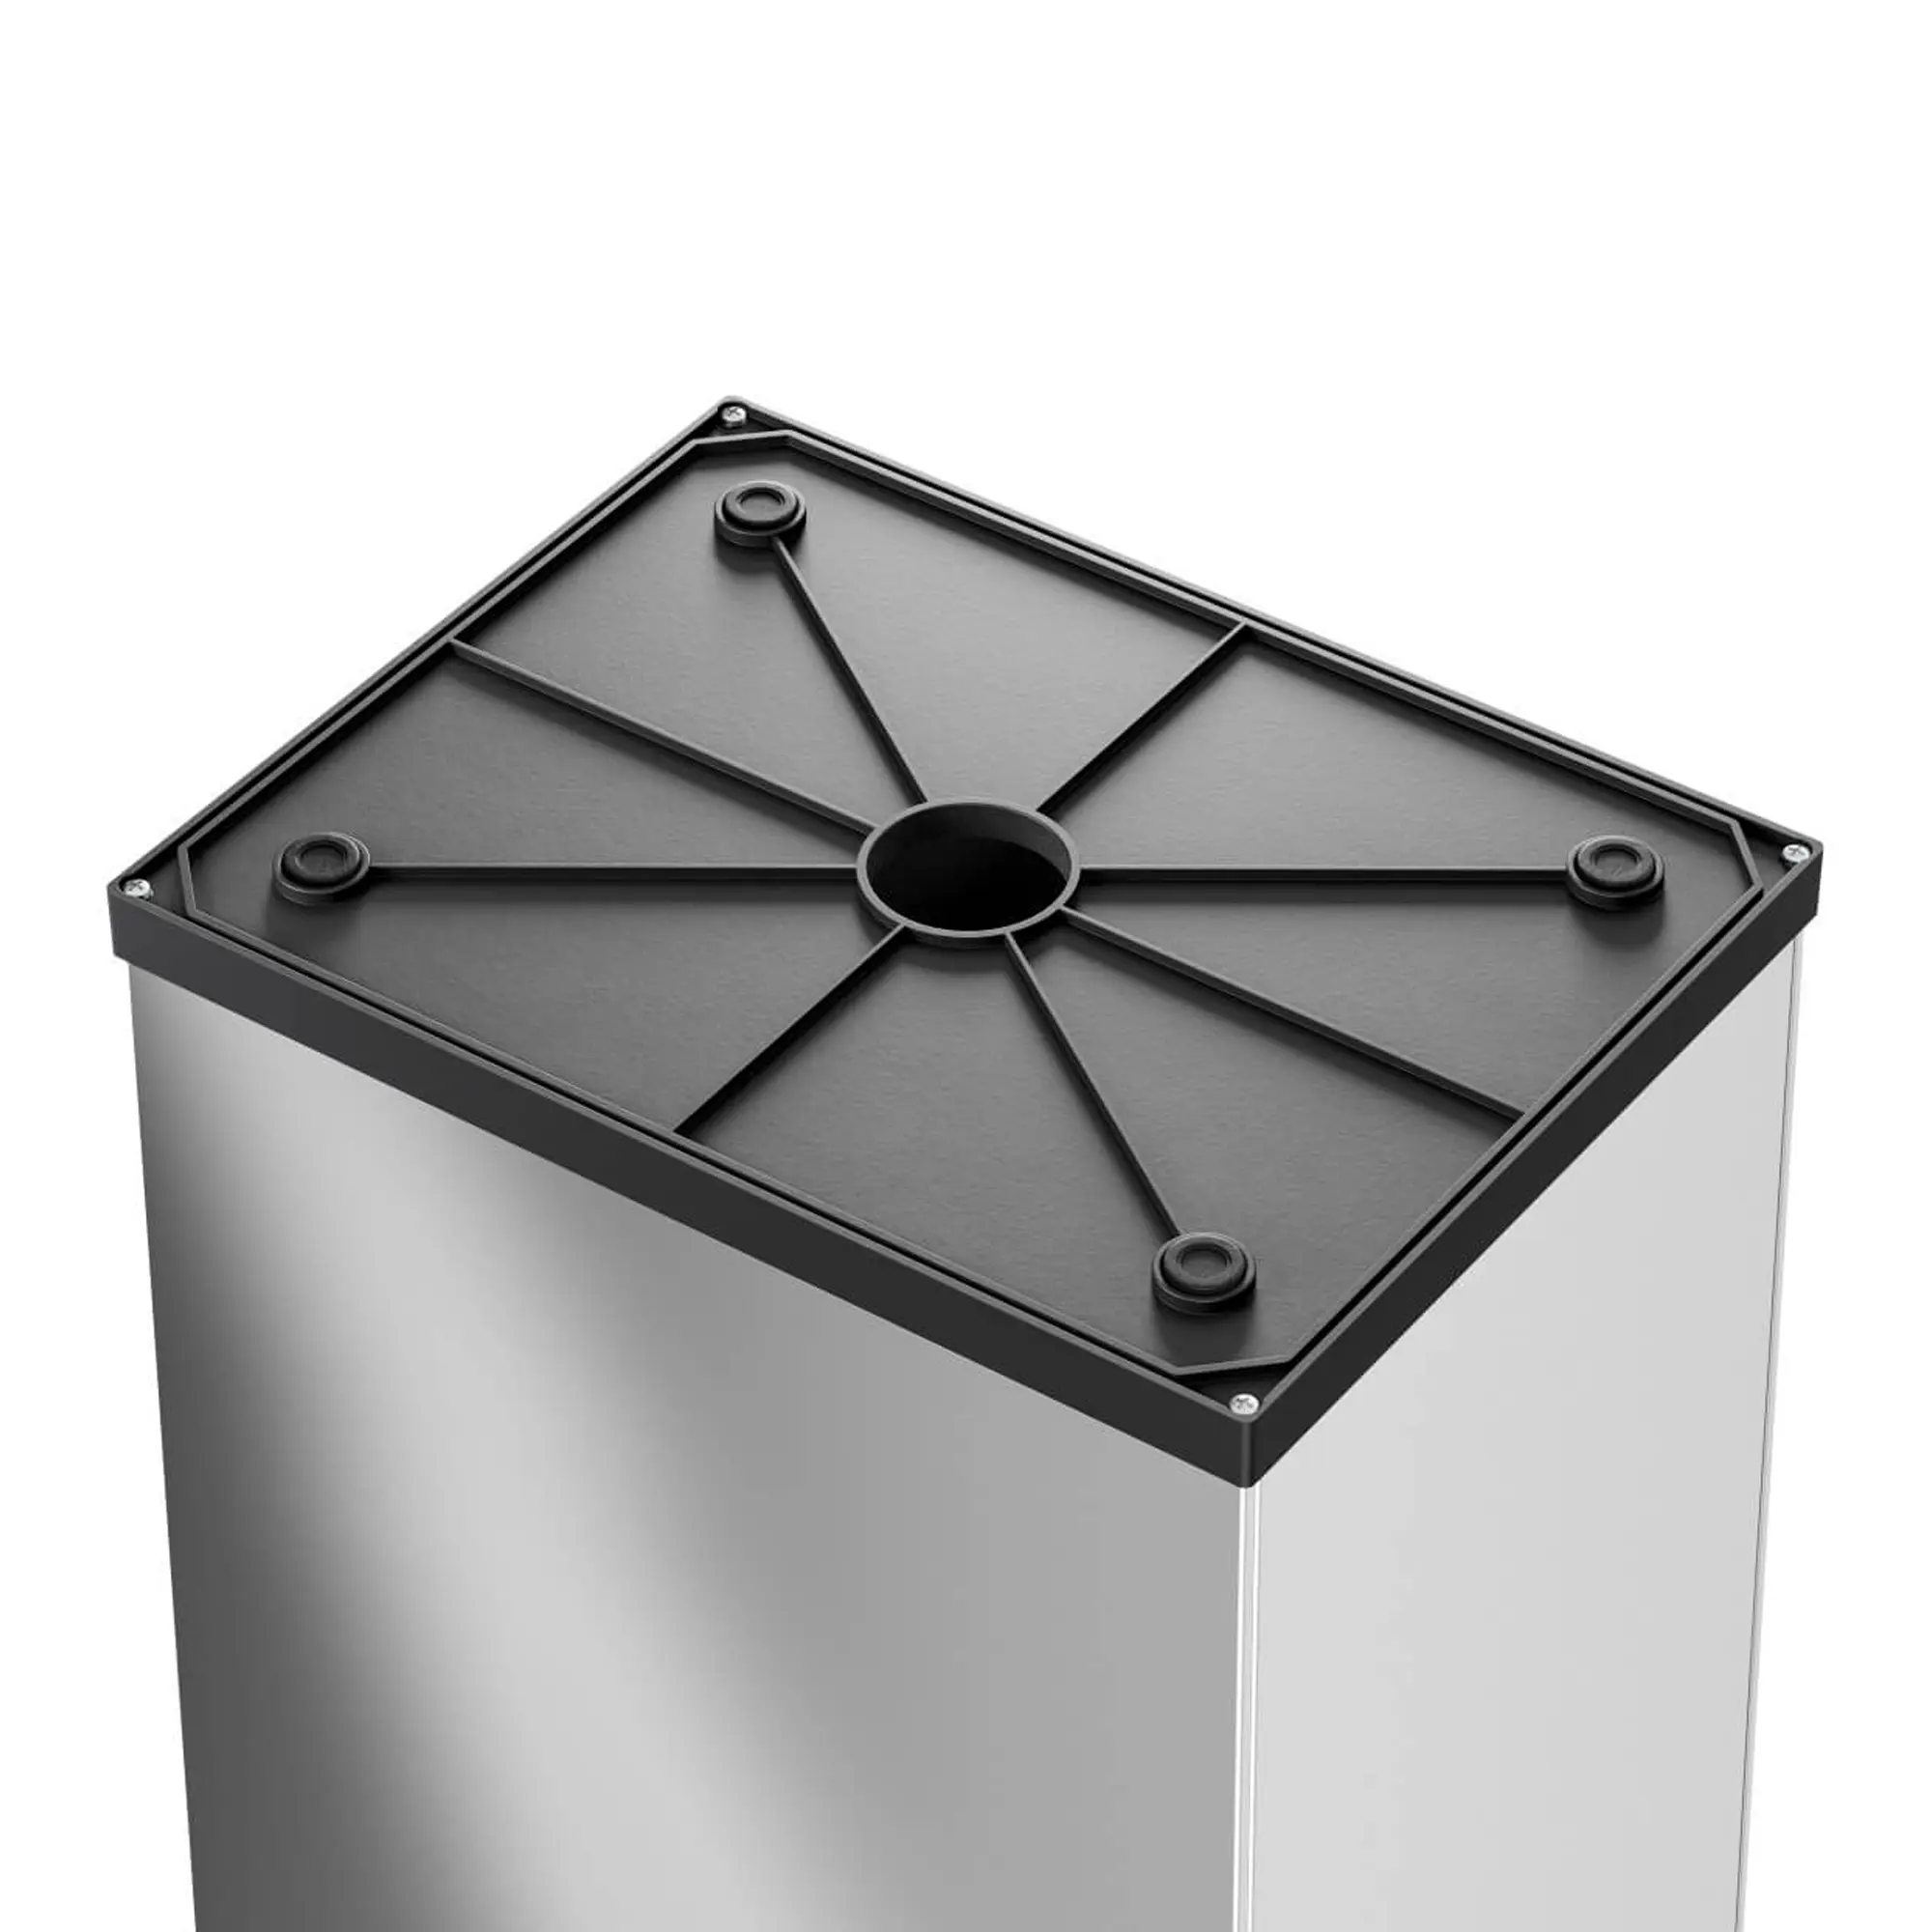 Hailo Großraum-Abfallbox Big-Box Swing XL 52 Liter schwarz anti rutsch Füße  0860-241